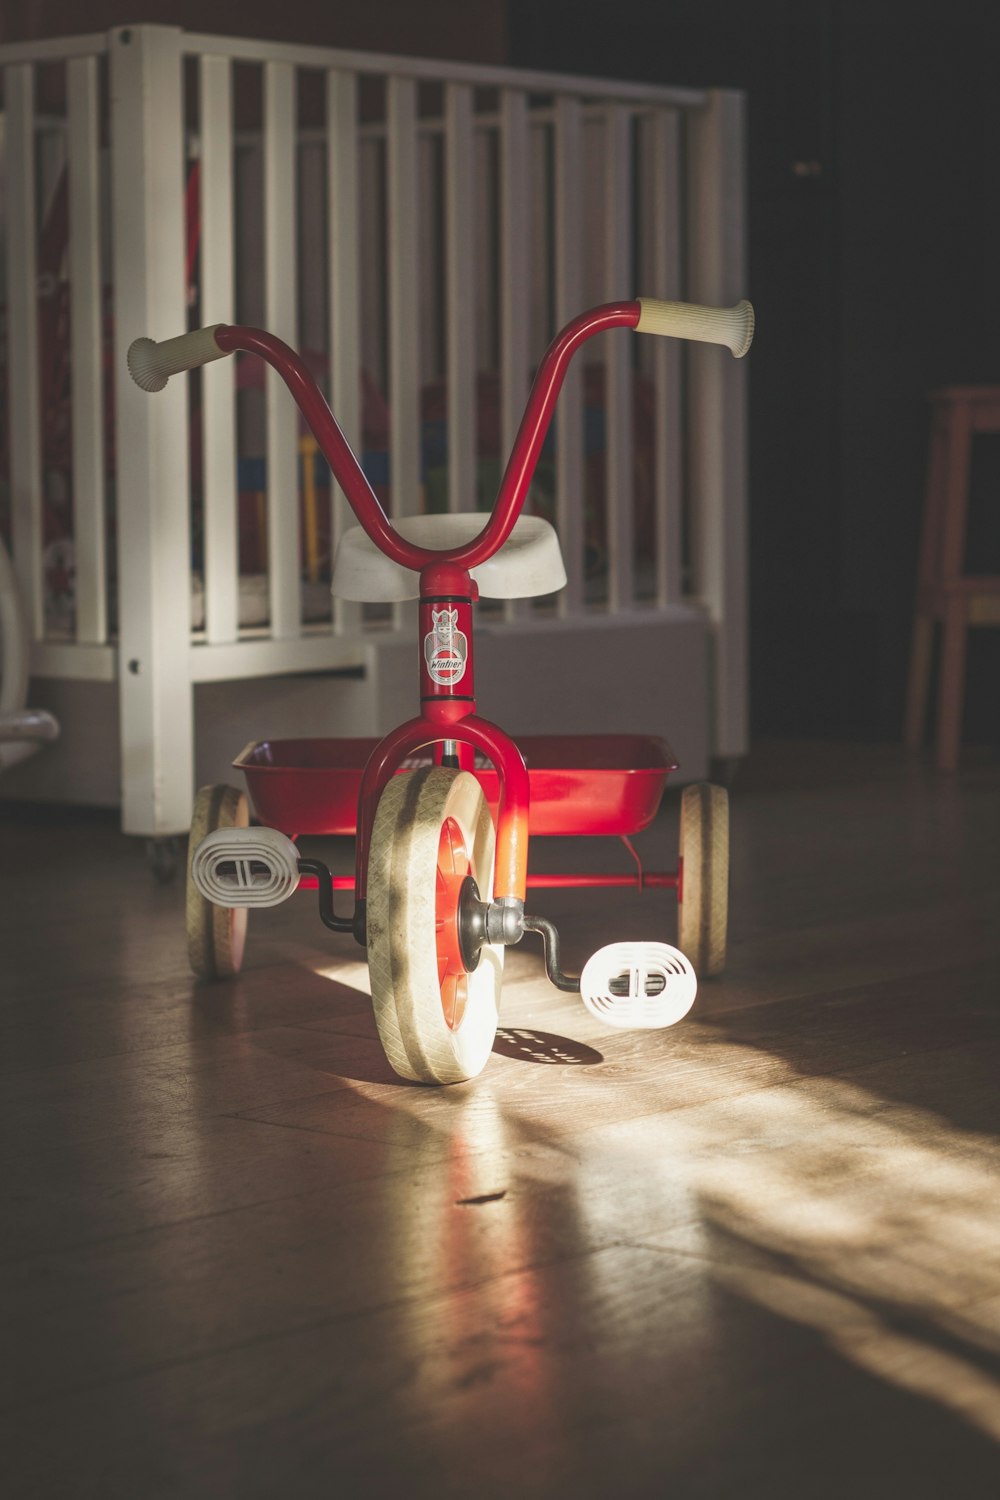 Fotografía de enfoque selectivo del triciclo rojo y blanco del niño pequeño junto a la cuna blanca